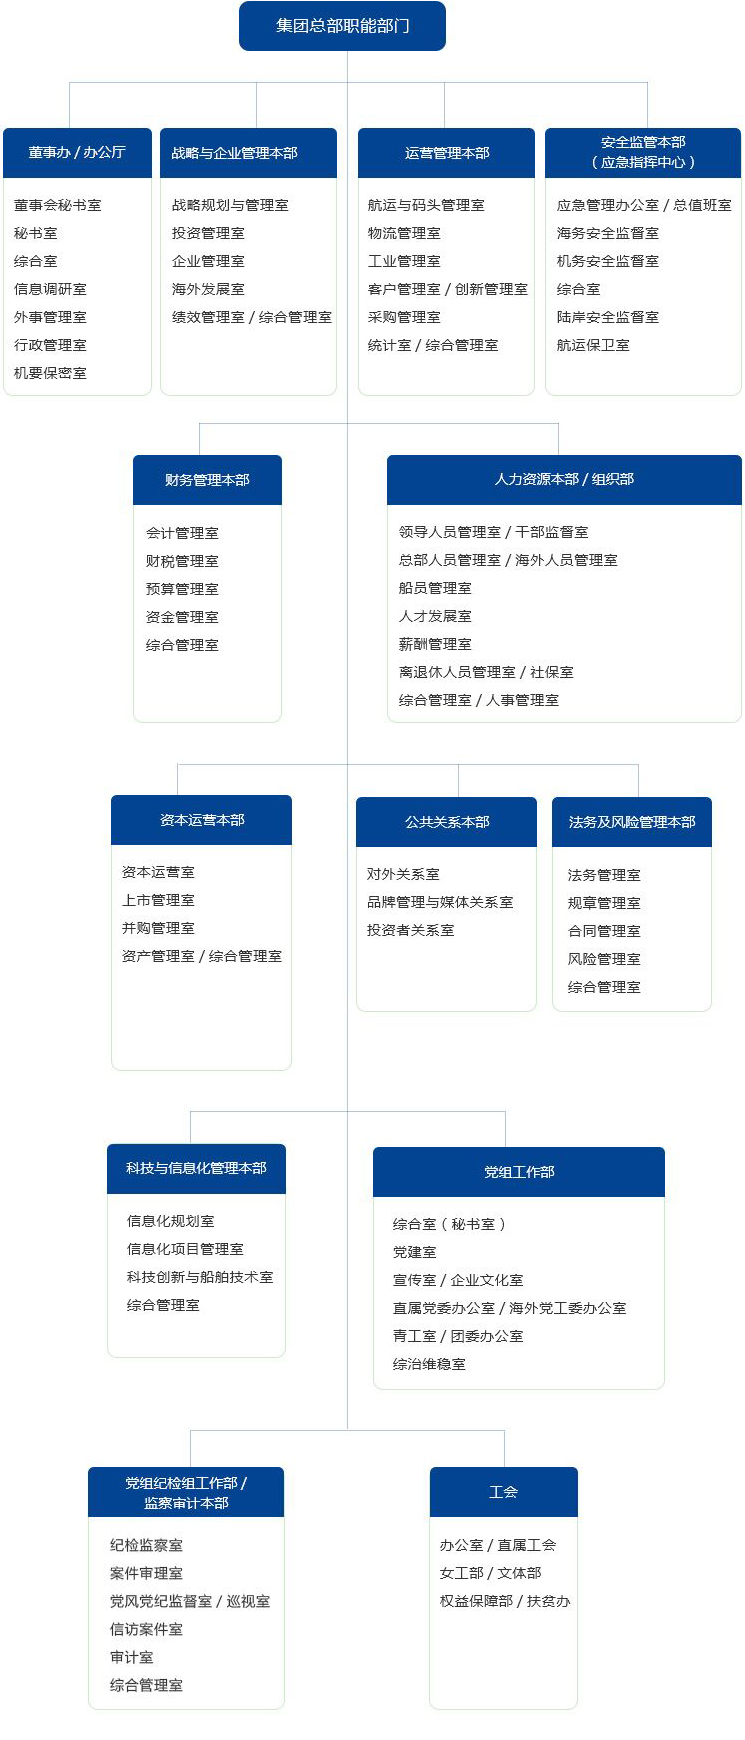 中國遠洋海運集團組織機構圖